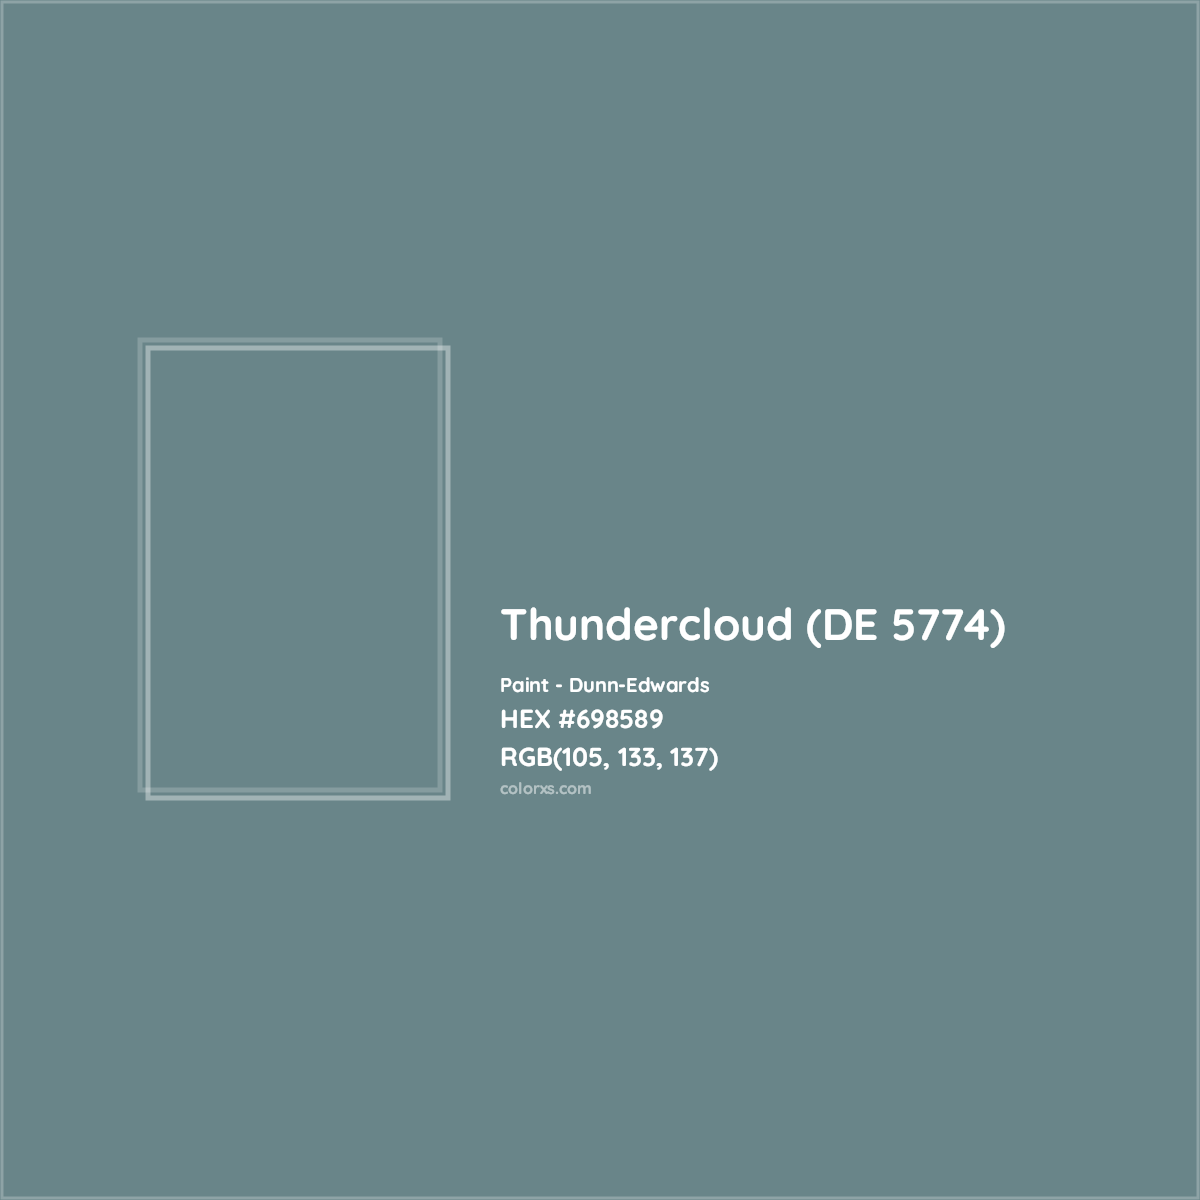 HEX #698589 Thundercloud (DE 5774) Paint Dunn-Edwards - Color Code